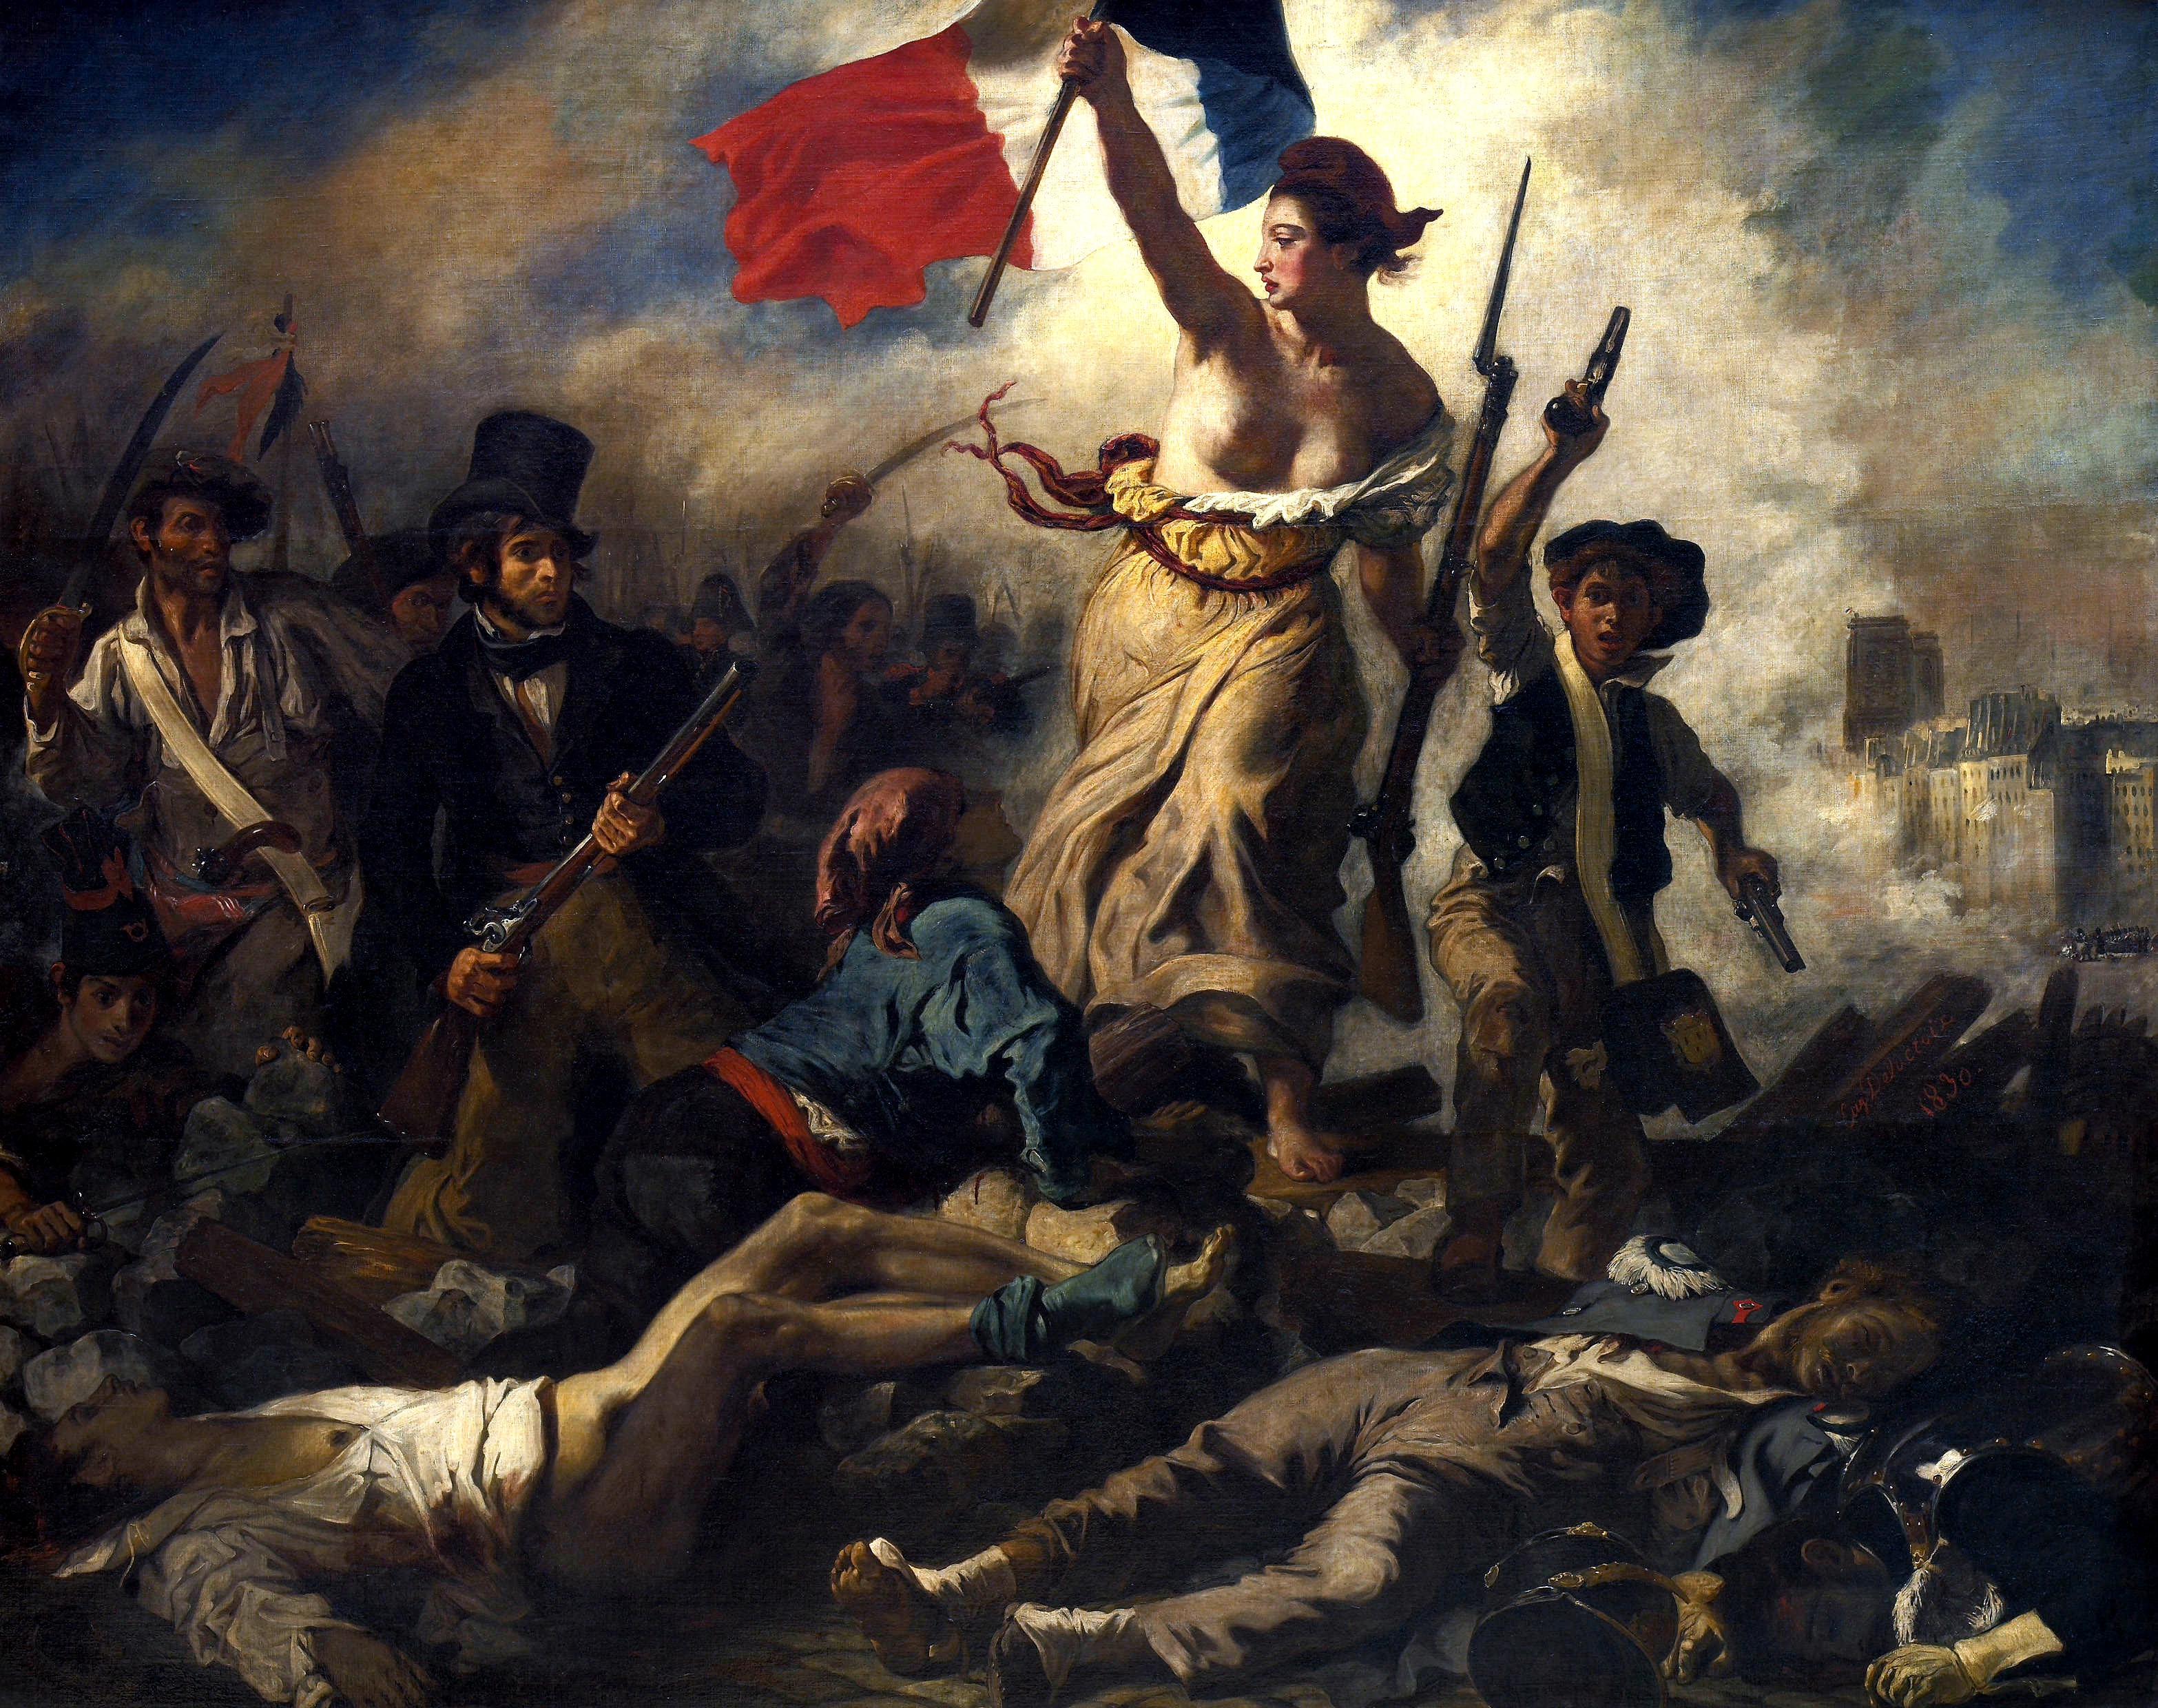 自由引領人民 by Eugène Delacroix - 1830 - 260 x 325 厘米 